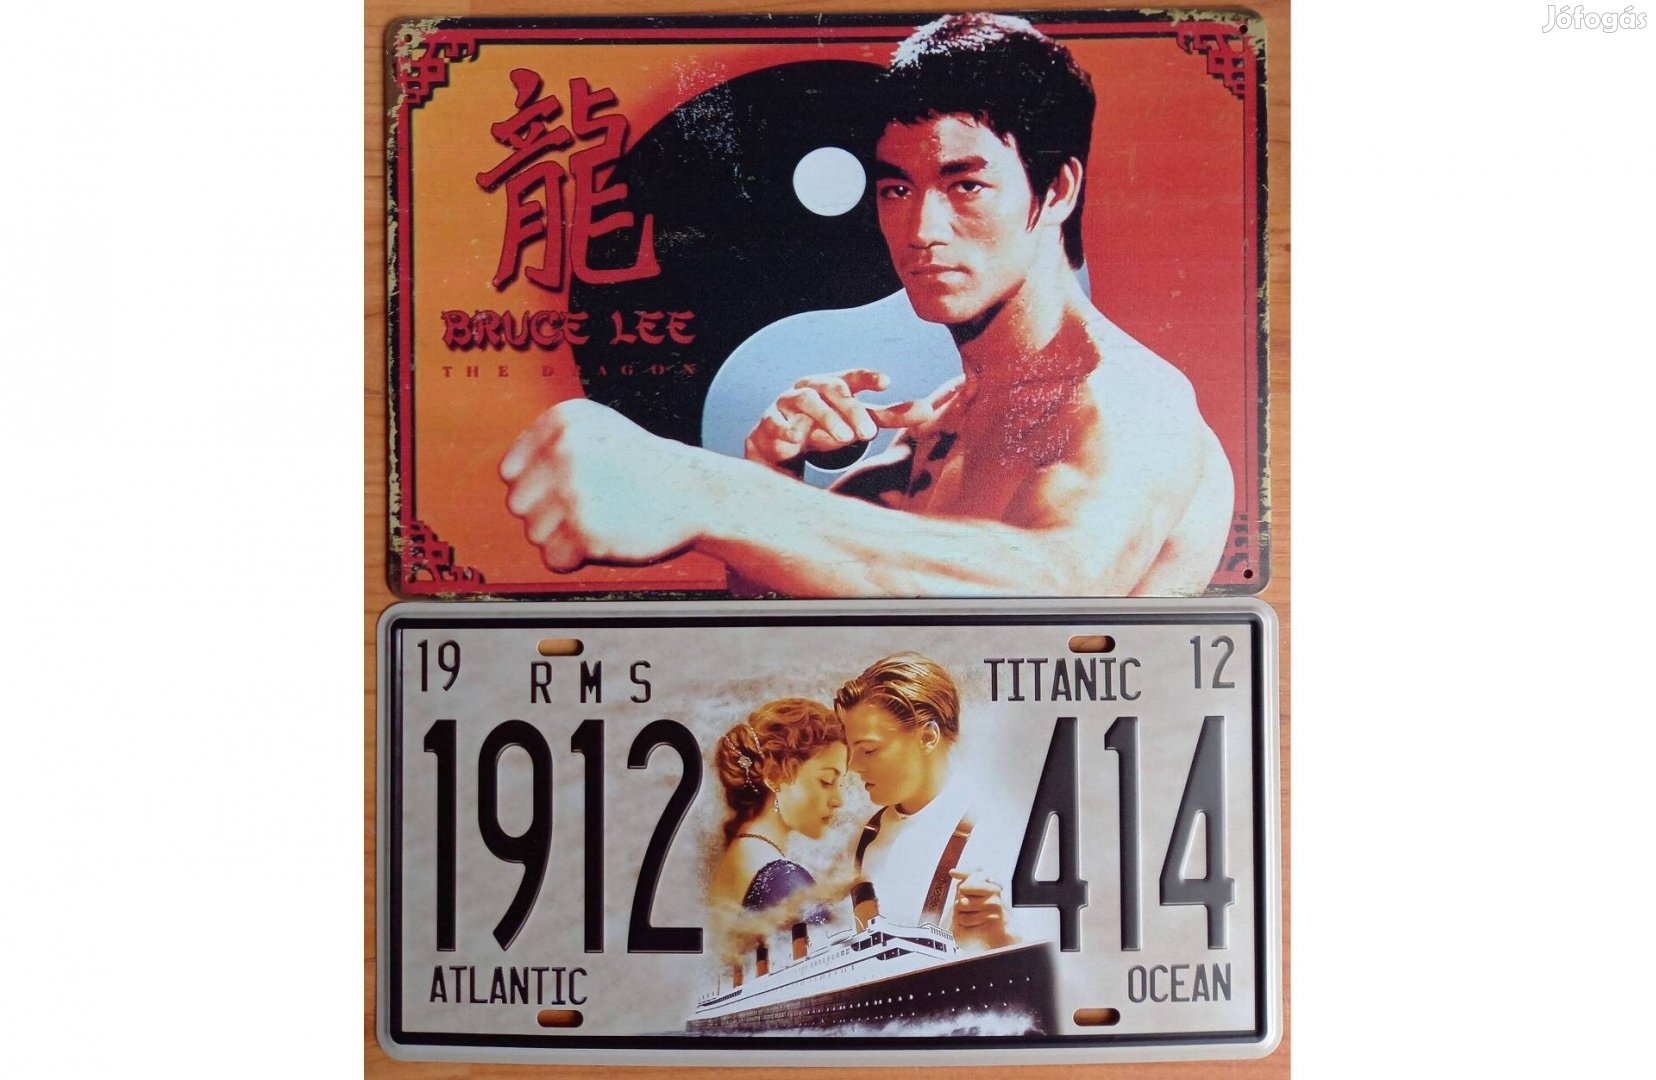 Dekorációs fém tábla (Bruce Lee-The Dragon - Titanic -Atalntic Ocean)